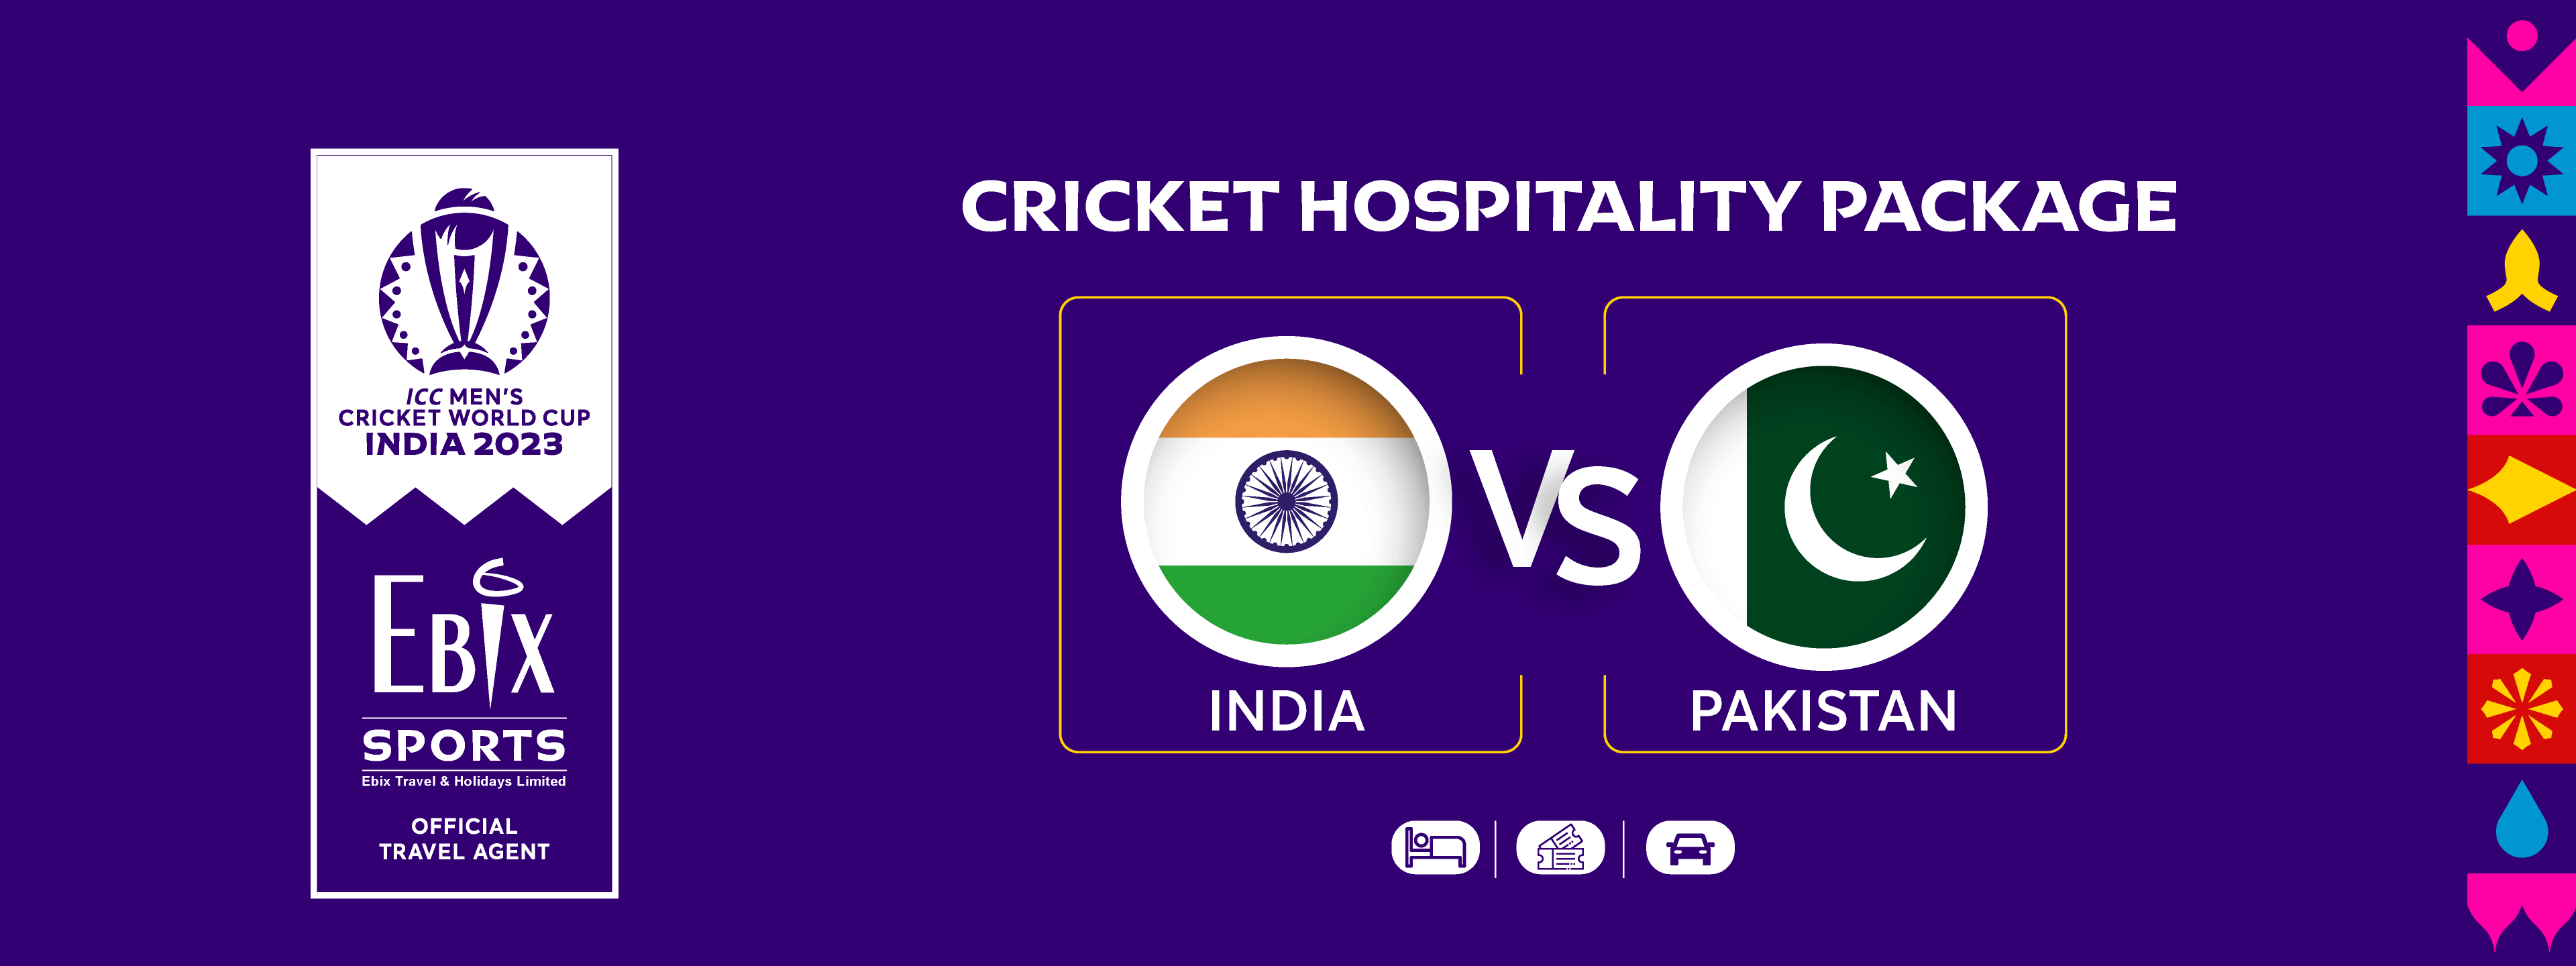 India v/s Pakistan